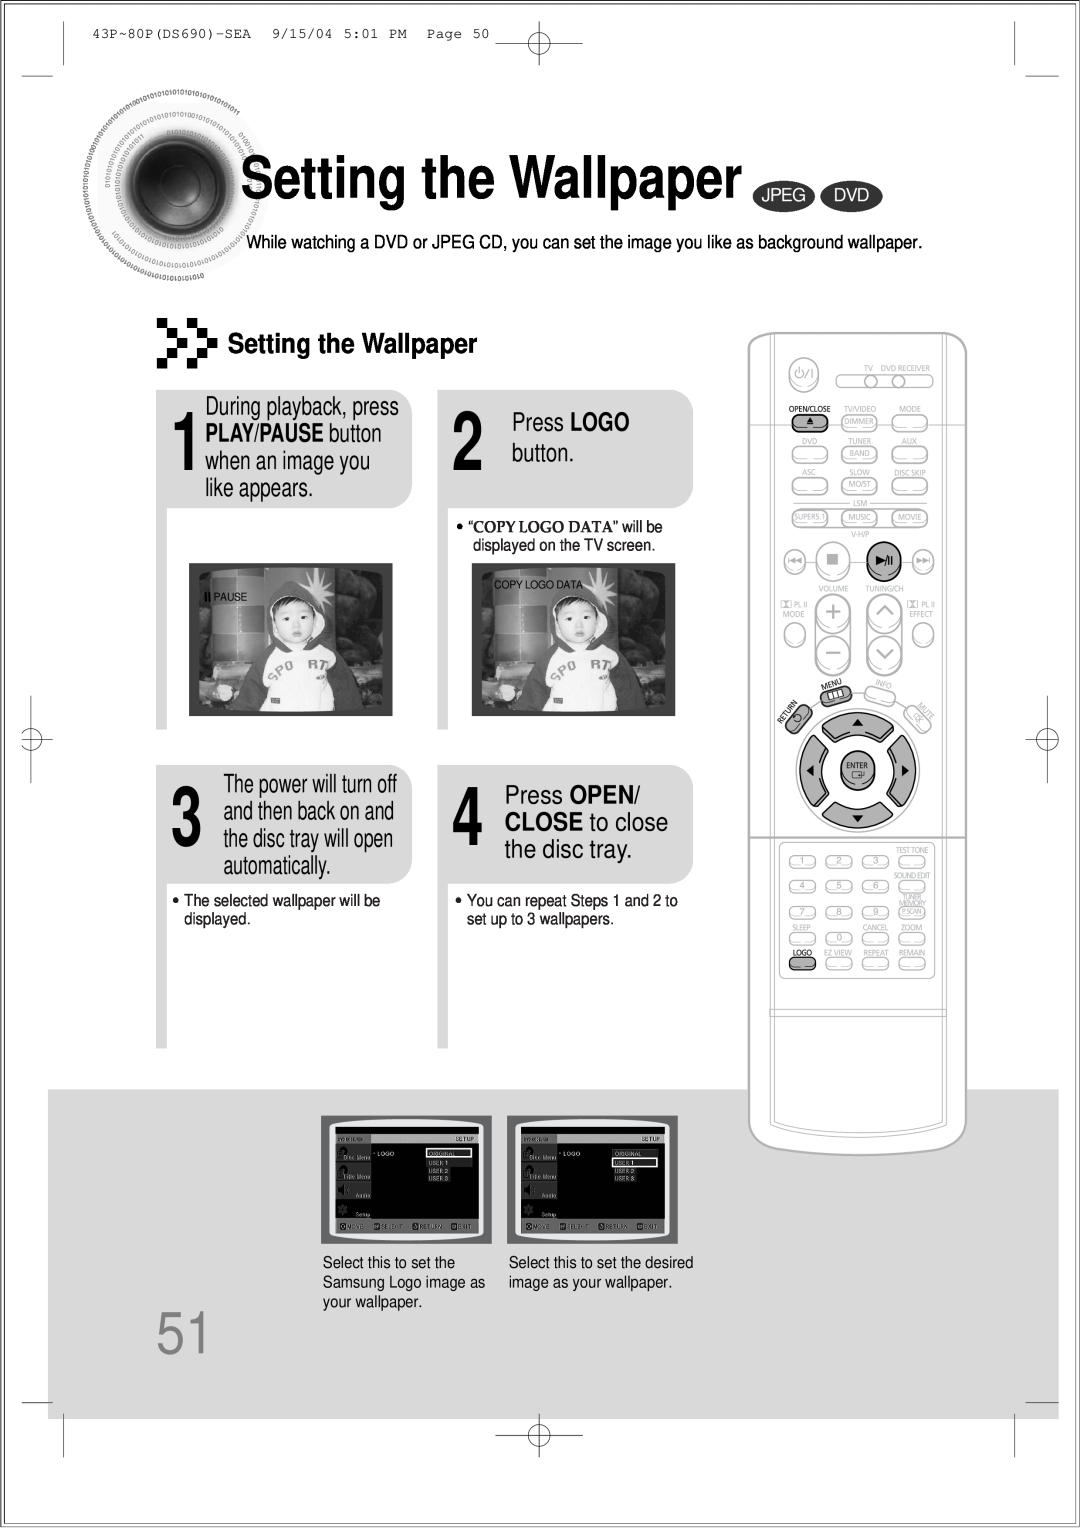 Samsung HT-DS690 Settingthe Wallpaper JPEG DVD, Setting the Wallpaper, During playback, press, Press OPEN, button 